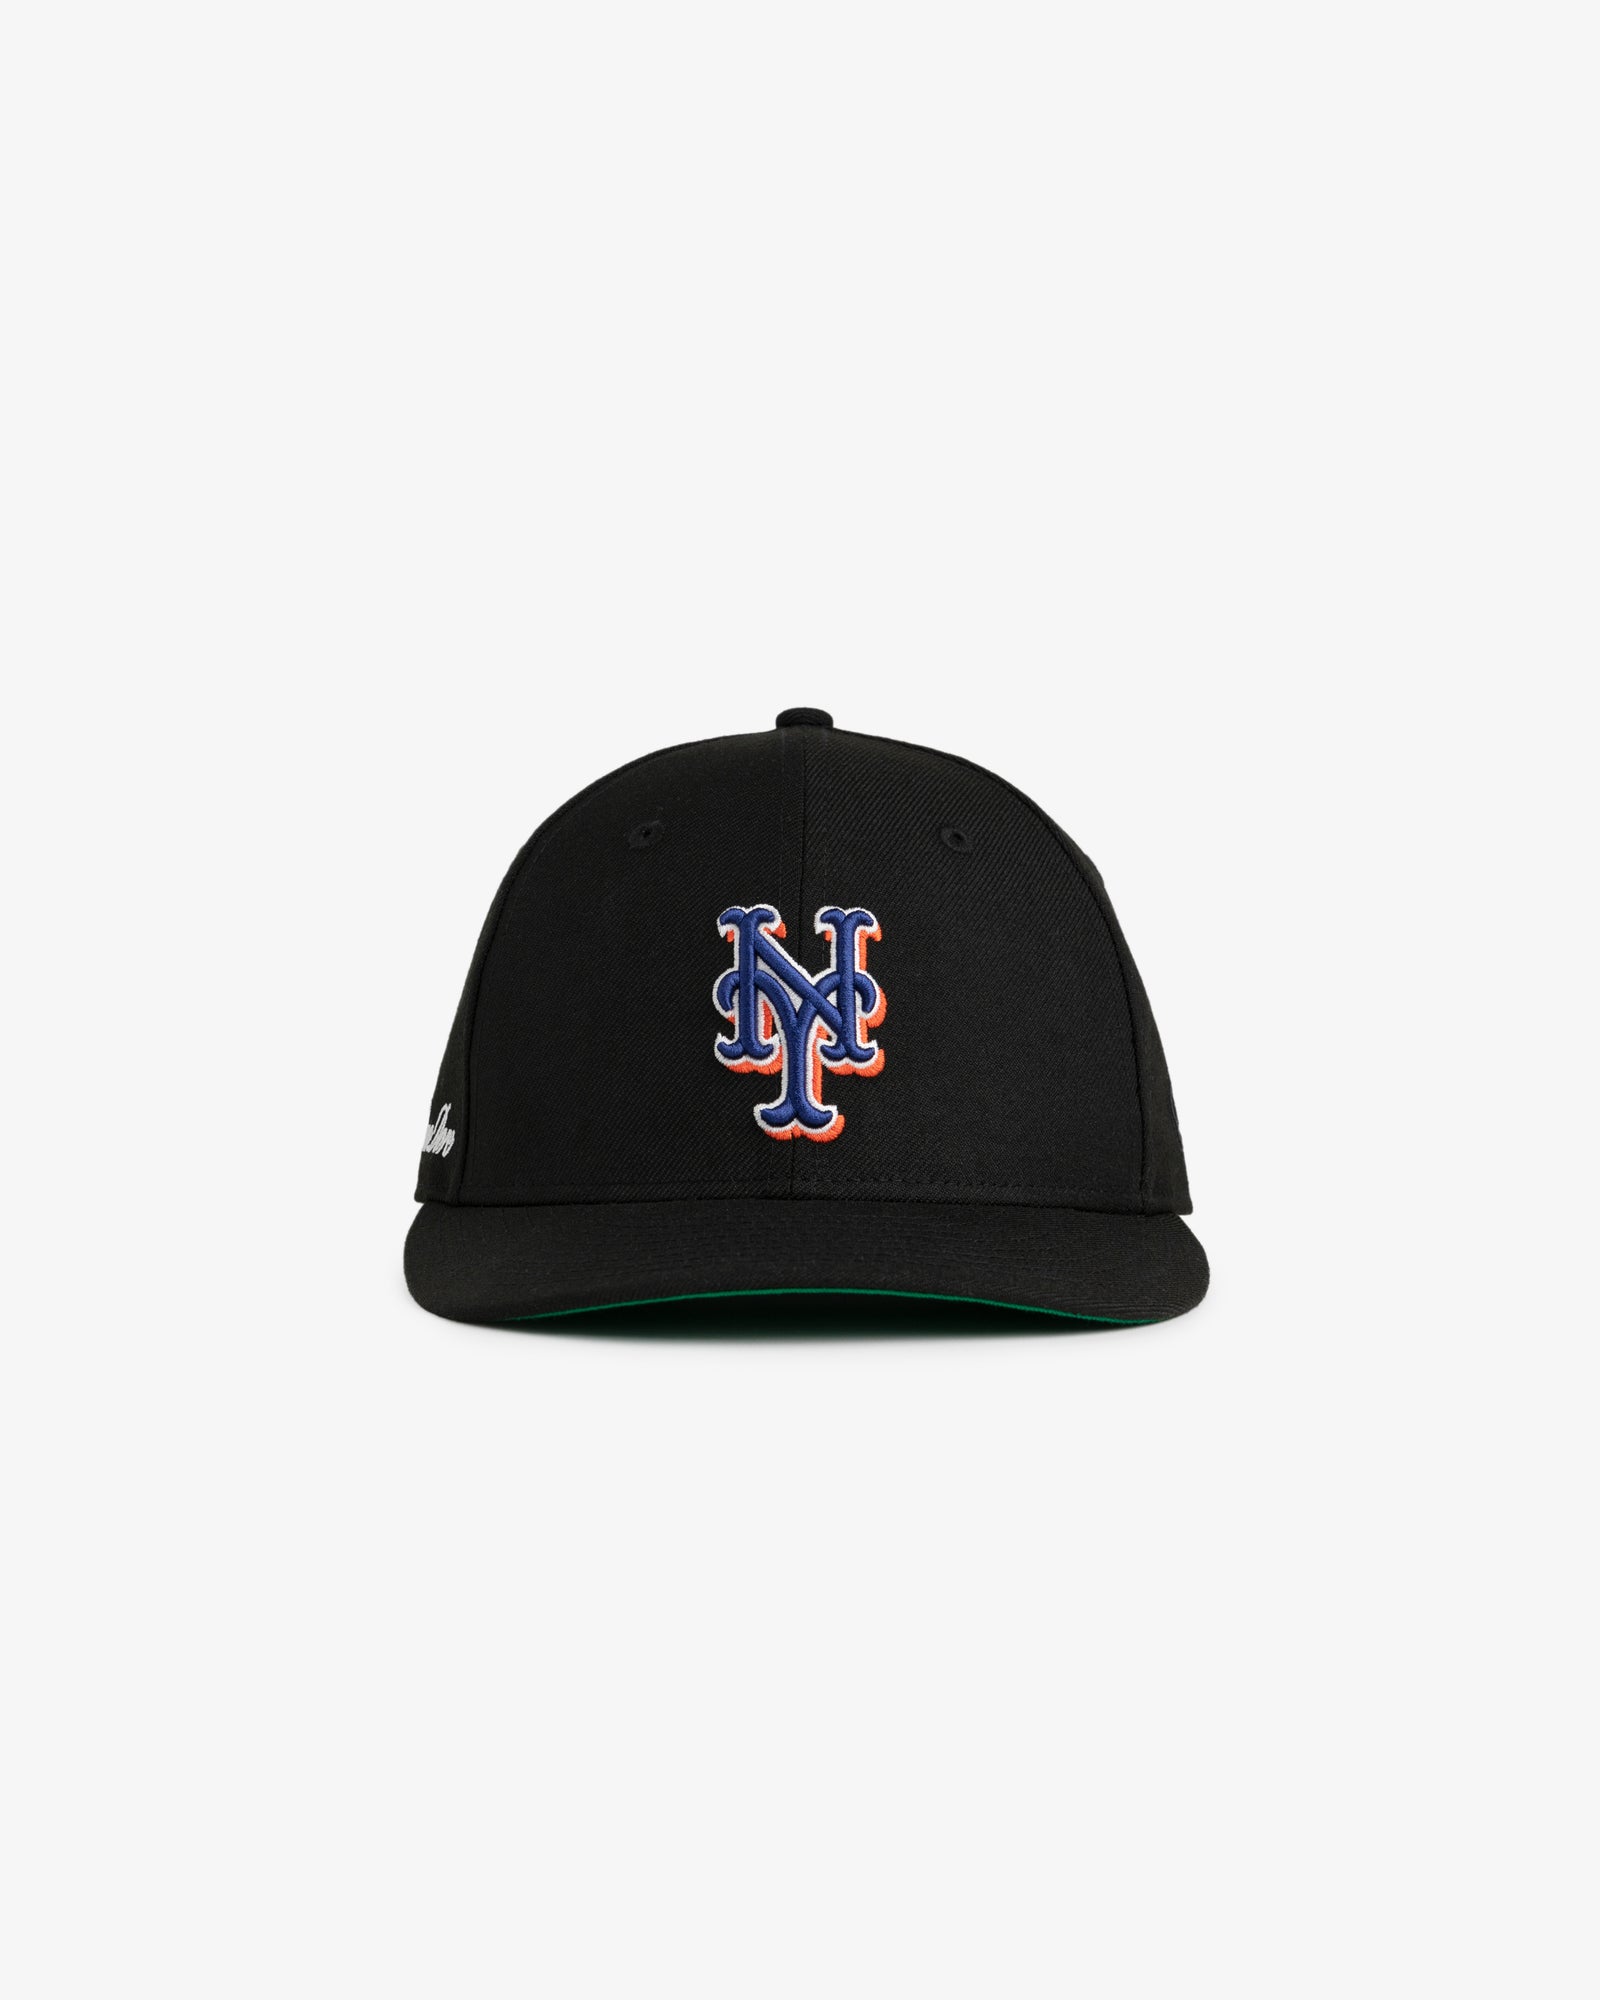 メンズAime Leon Dore Yankees Mets Hat Black - 帽子